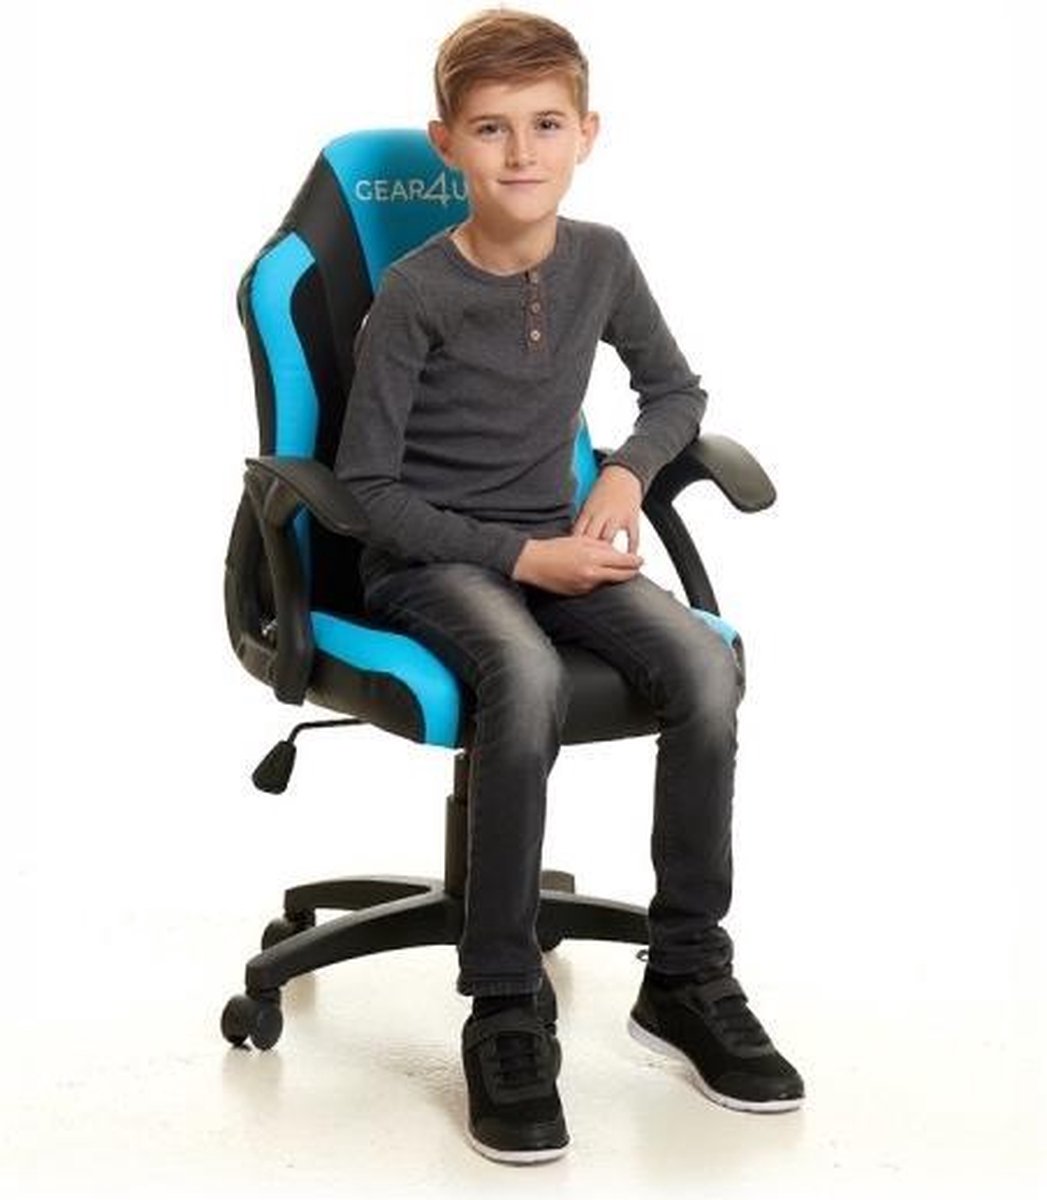 Ontdekking Bekend Gezag Gear4U Junior Hero gaming stoel - gamestoel voor kinderen / game stoel voor  kinderen -... | bol.com